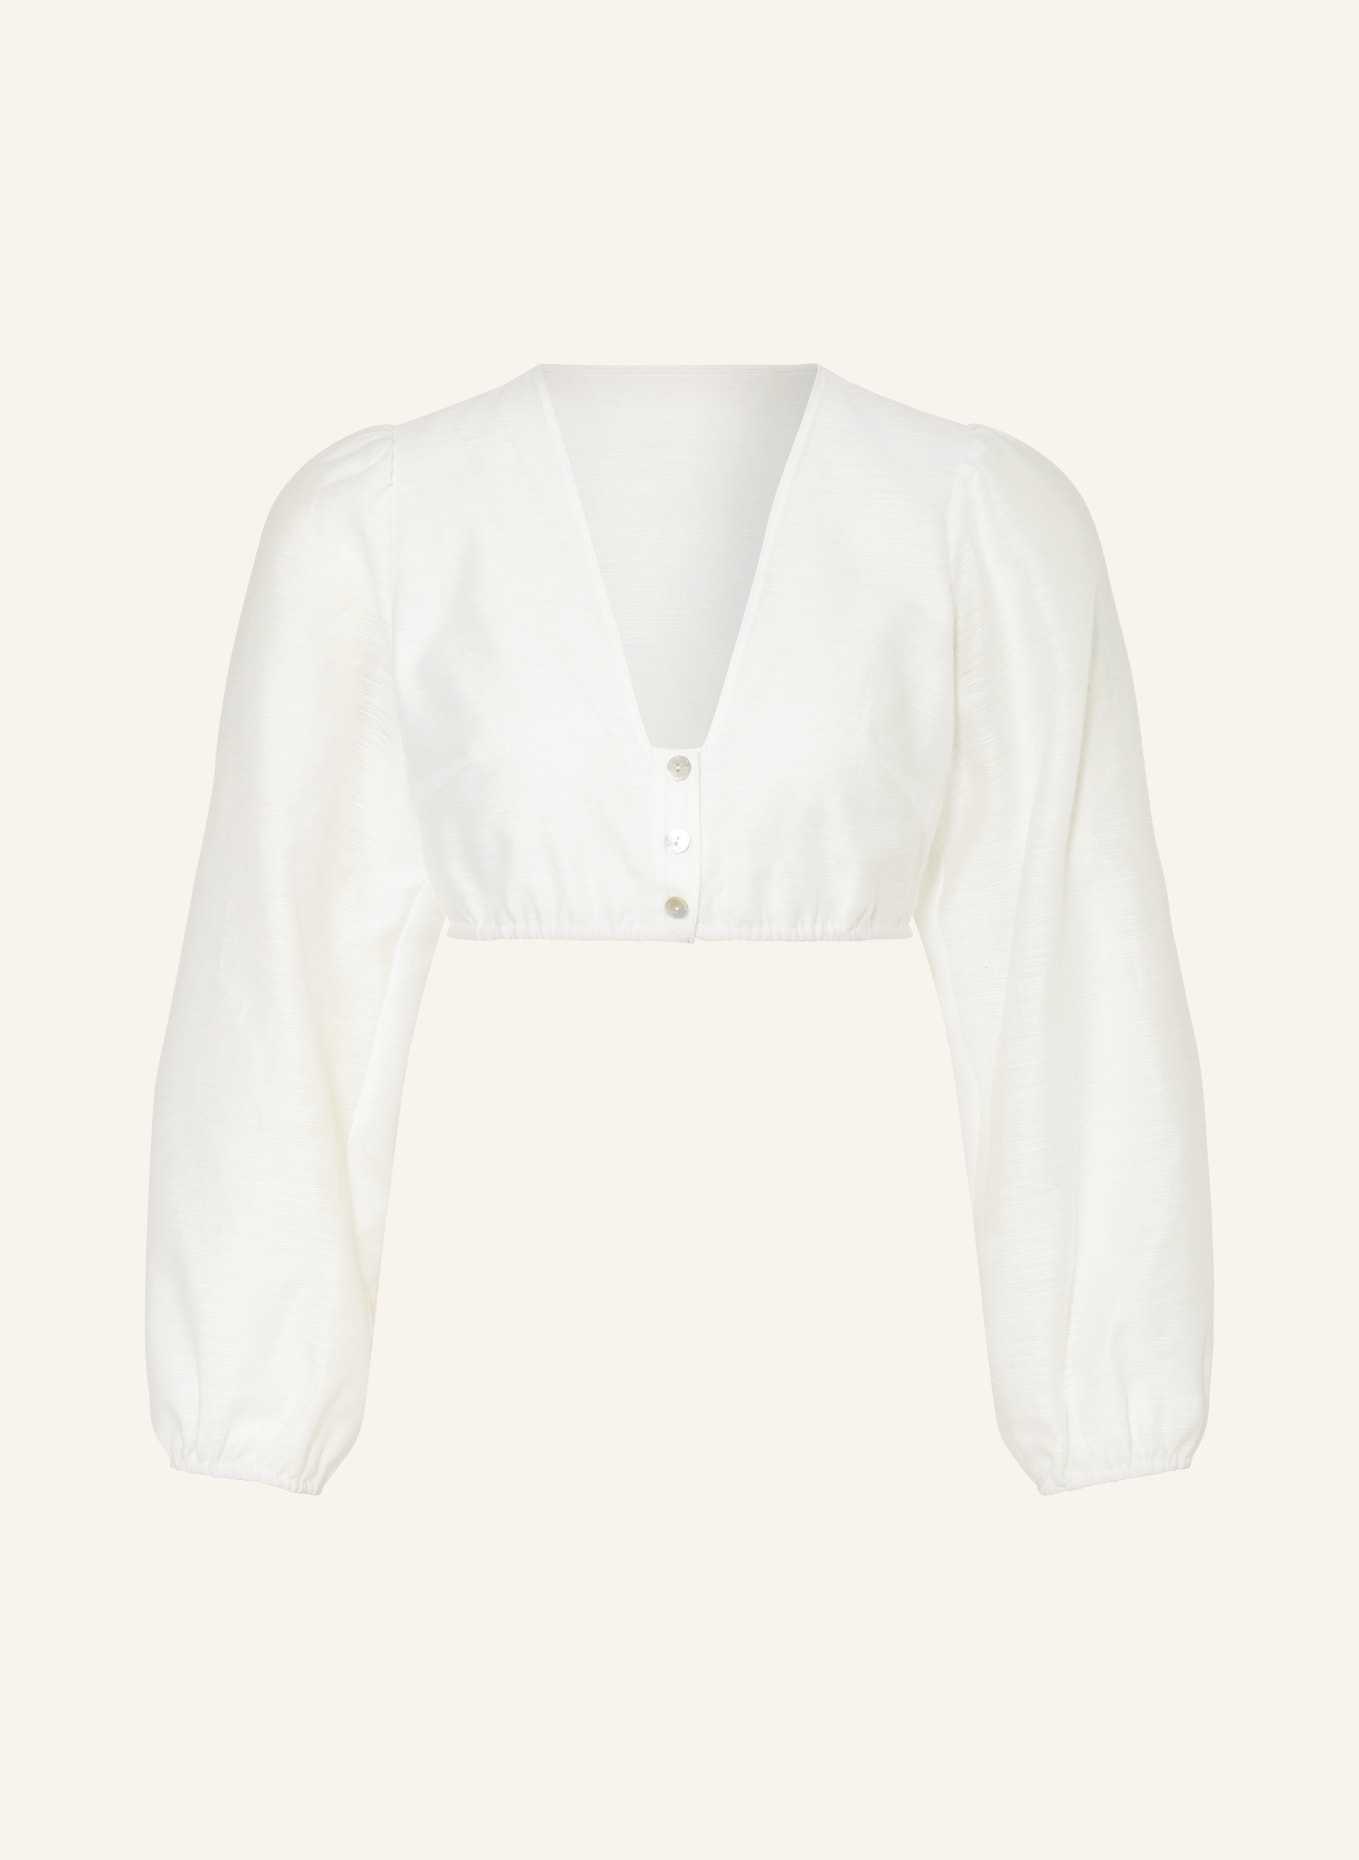 SPORTALM Dirndl blouse, Color: CREAM (Image 1)